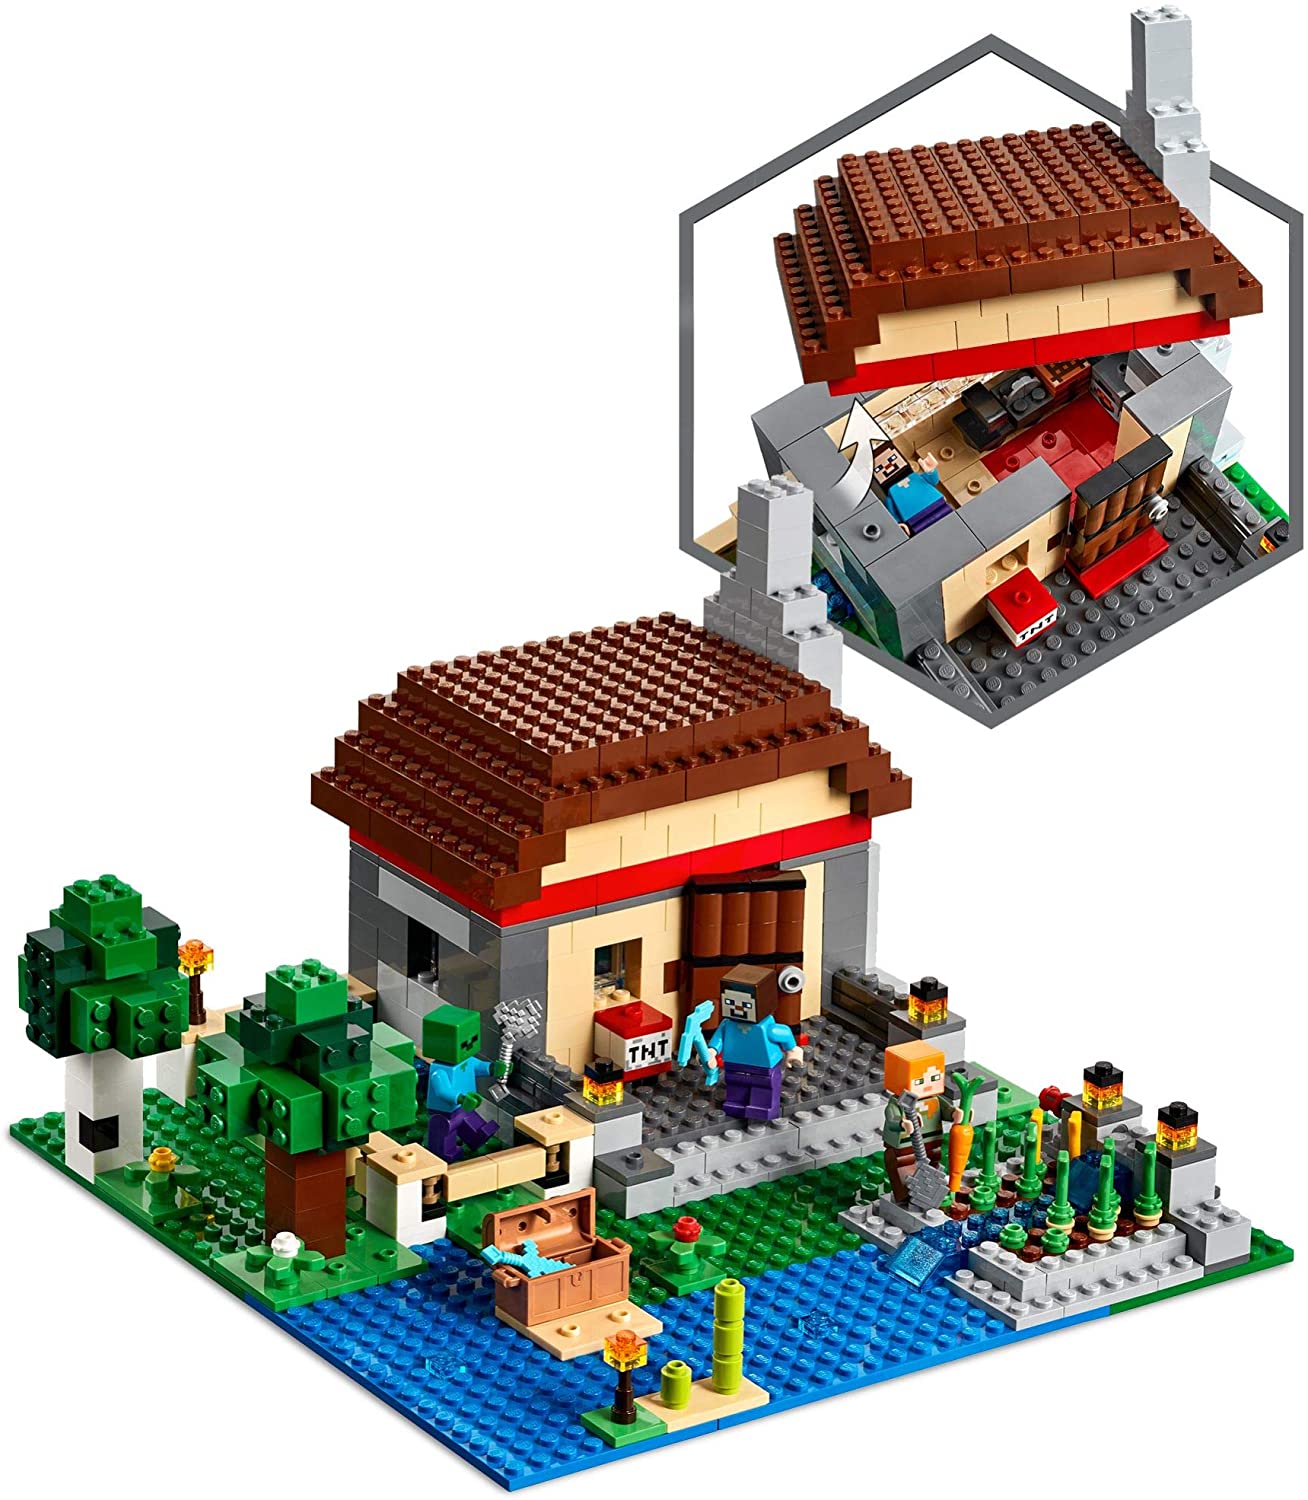 LEGO Minecraft Summer 2020 Sets Revealed on Amazon  The Brick Fan